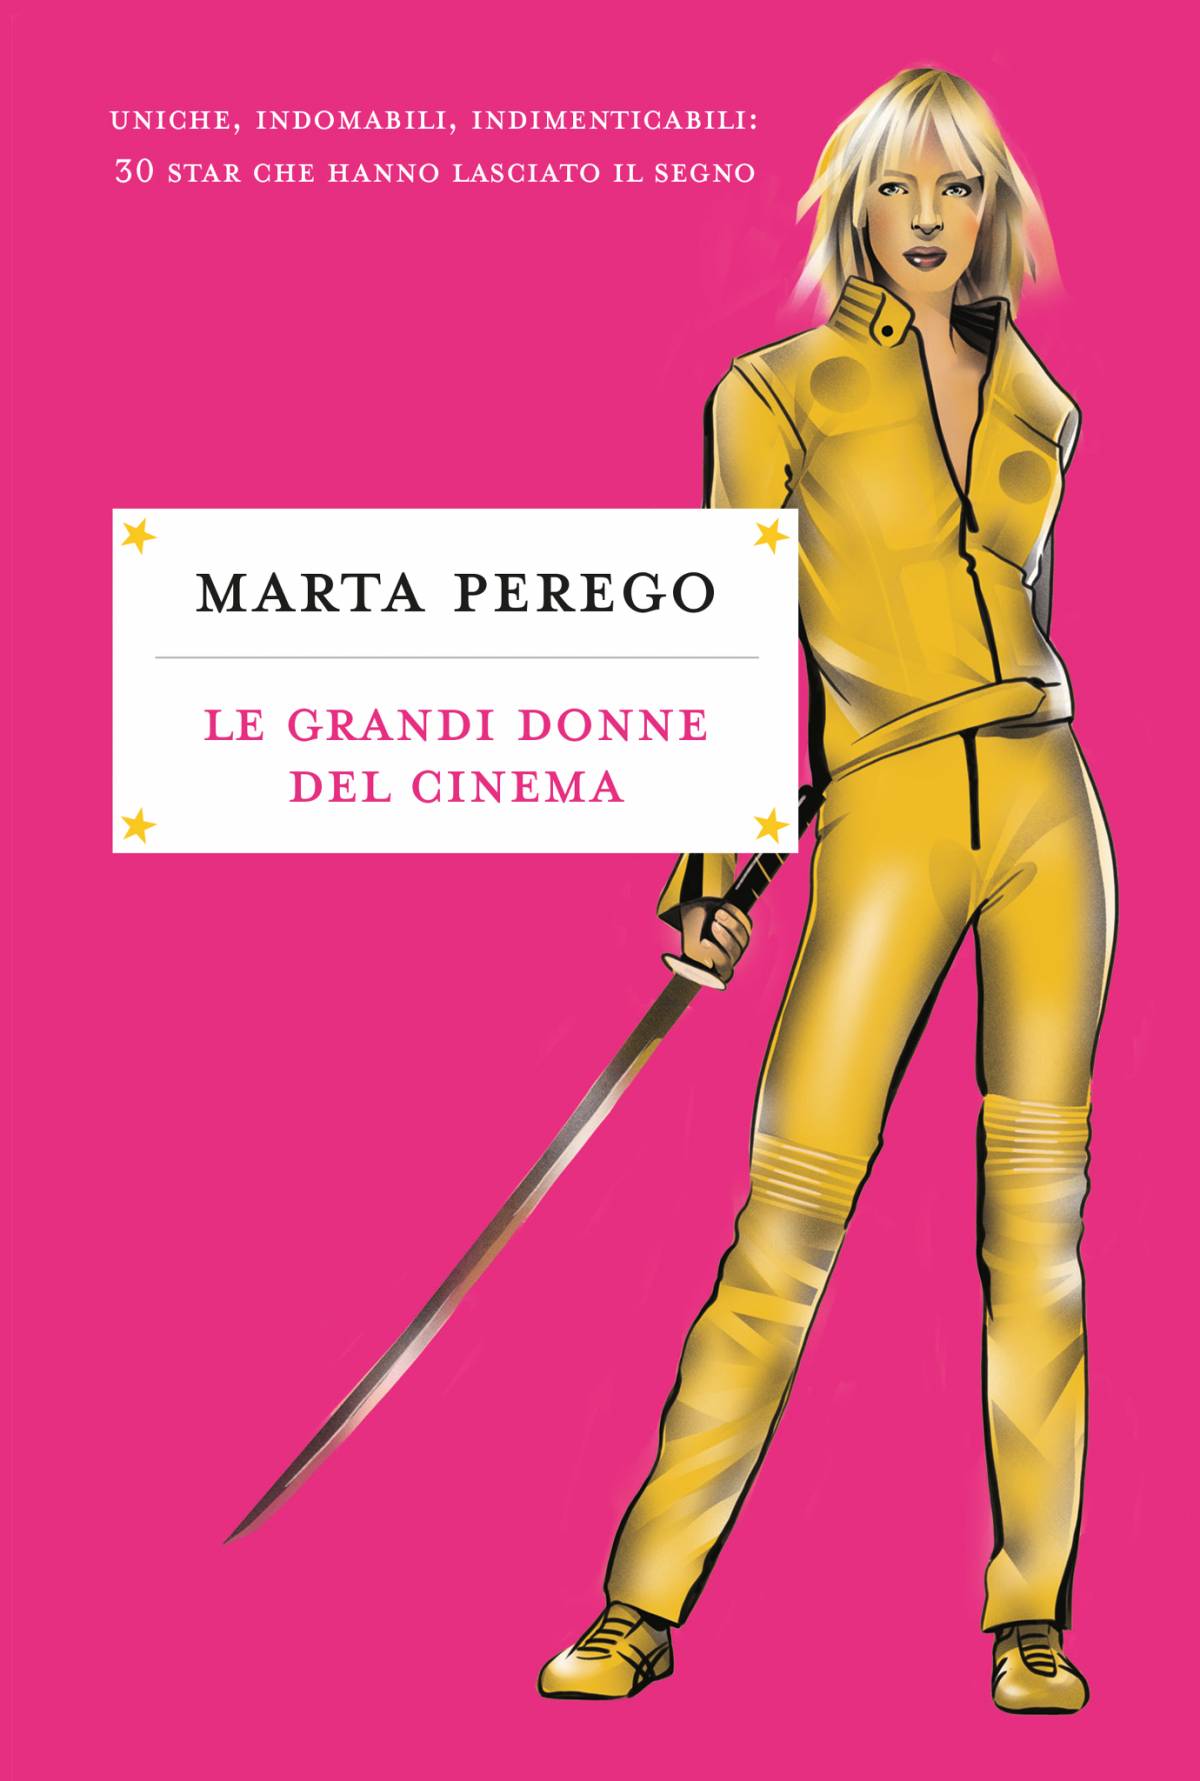 Marta Perego celebra le donne del cinema in un nuovo libro